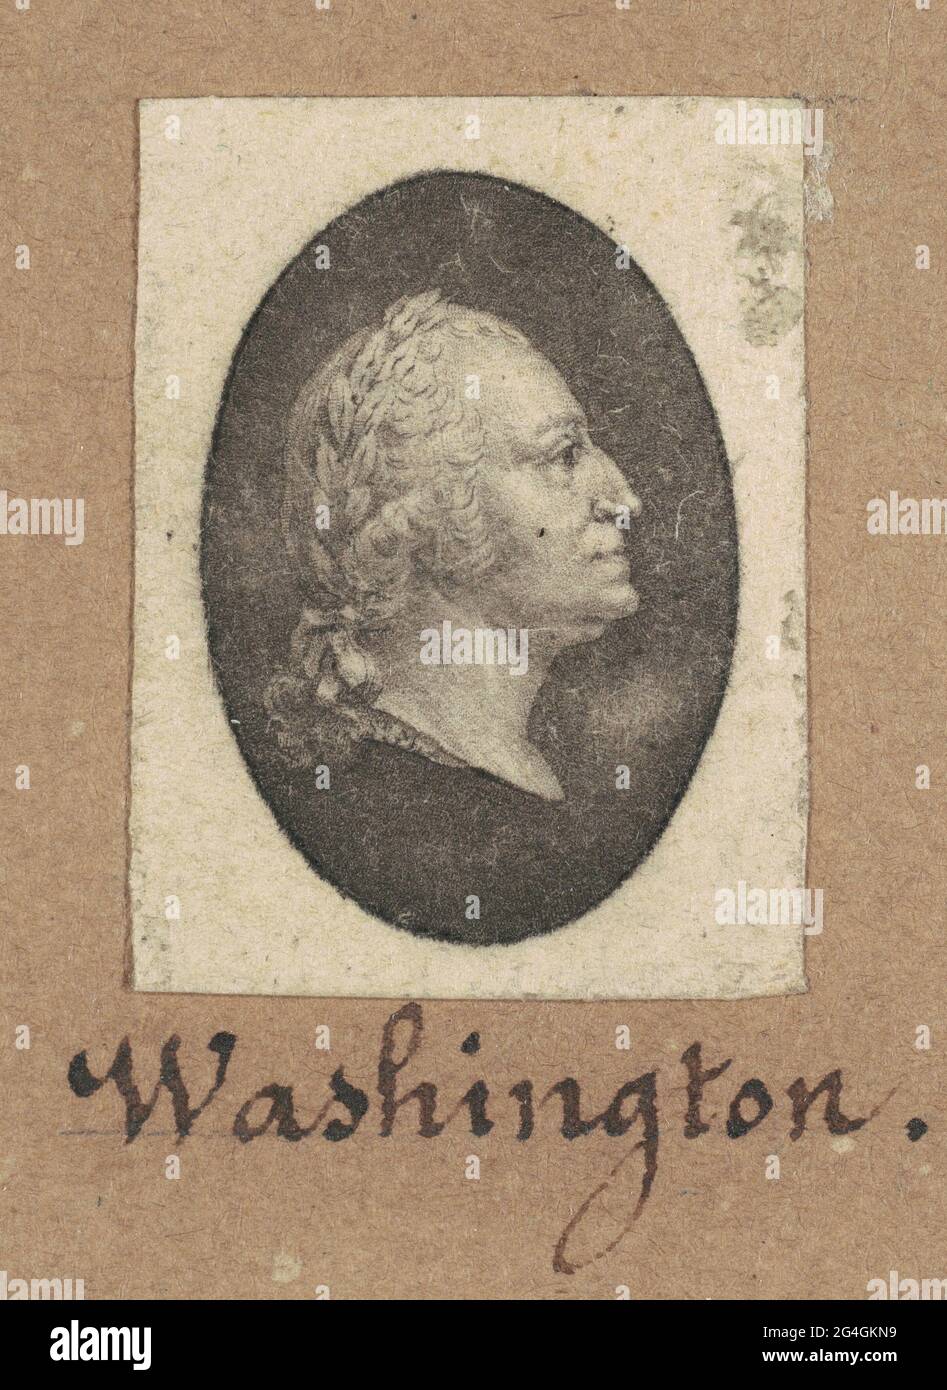 George Washington, c. 1800. Stock Photo